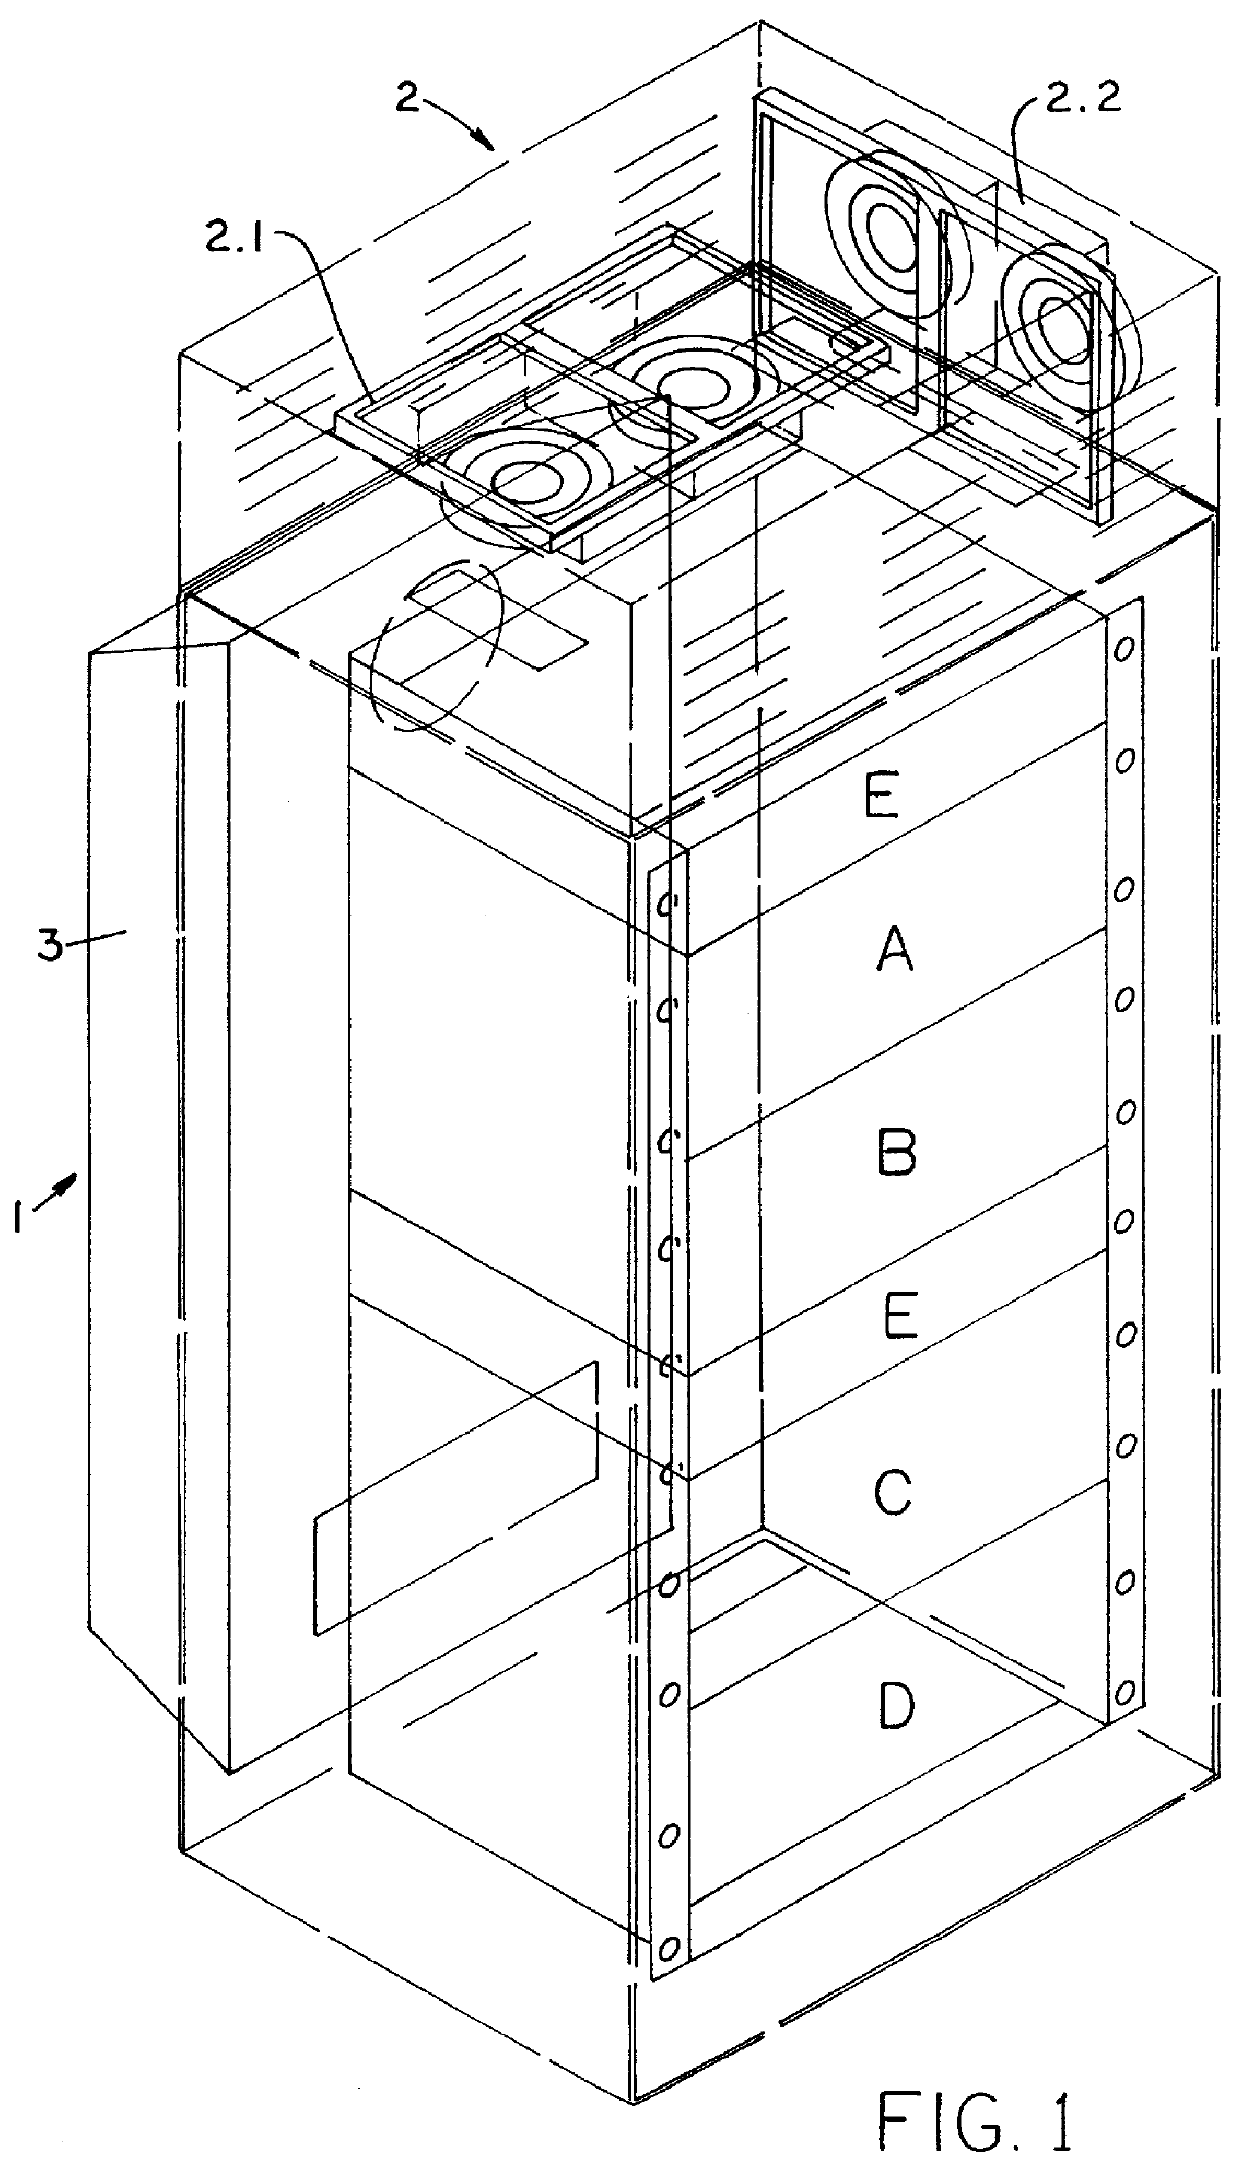 Switchgear cabinet air-conditioning arrangement